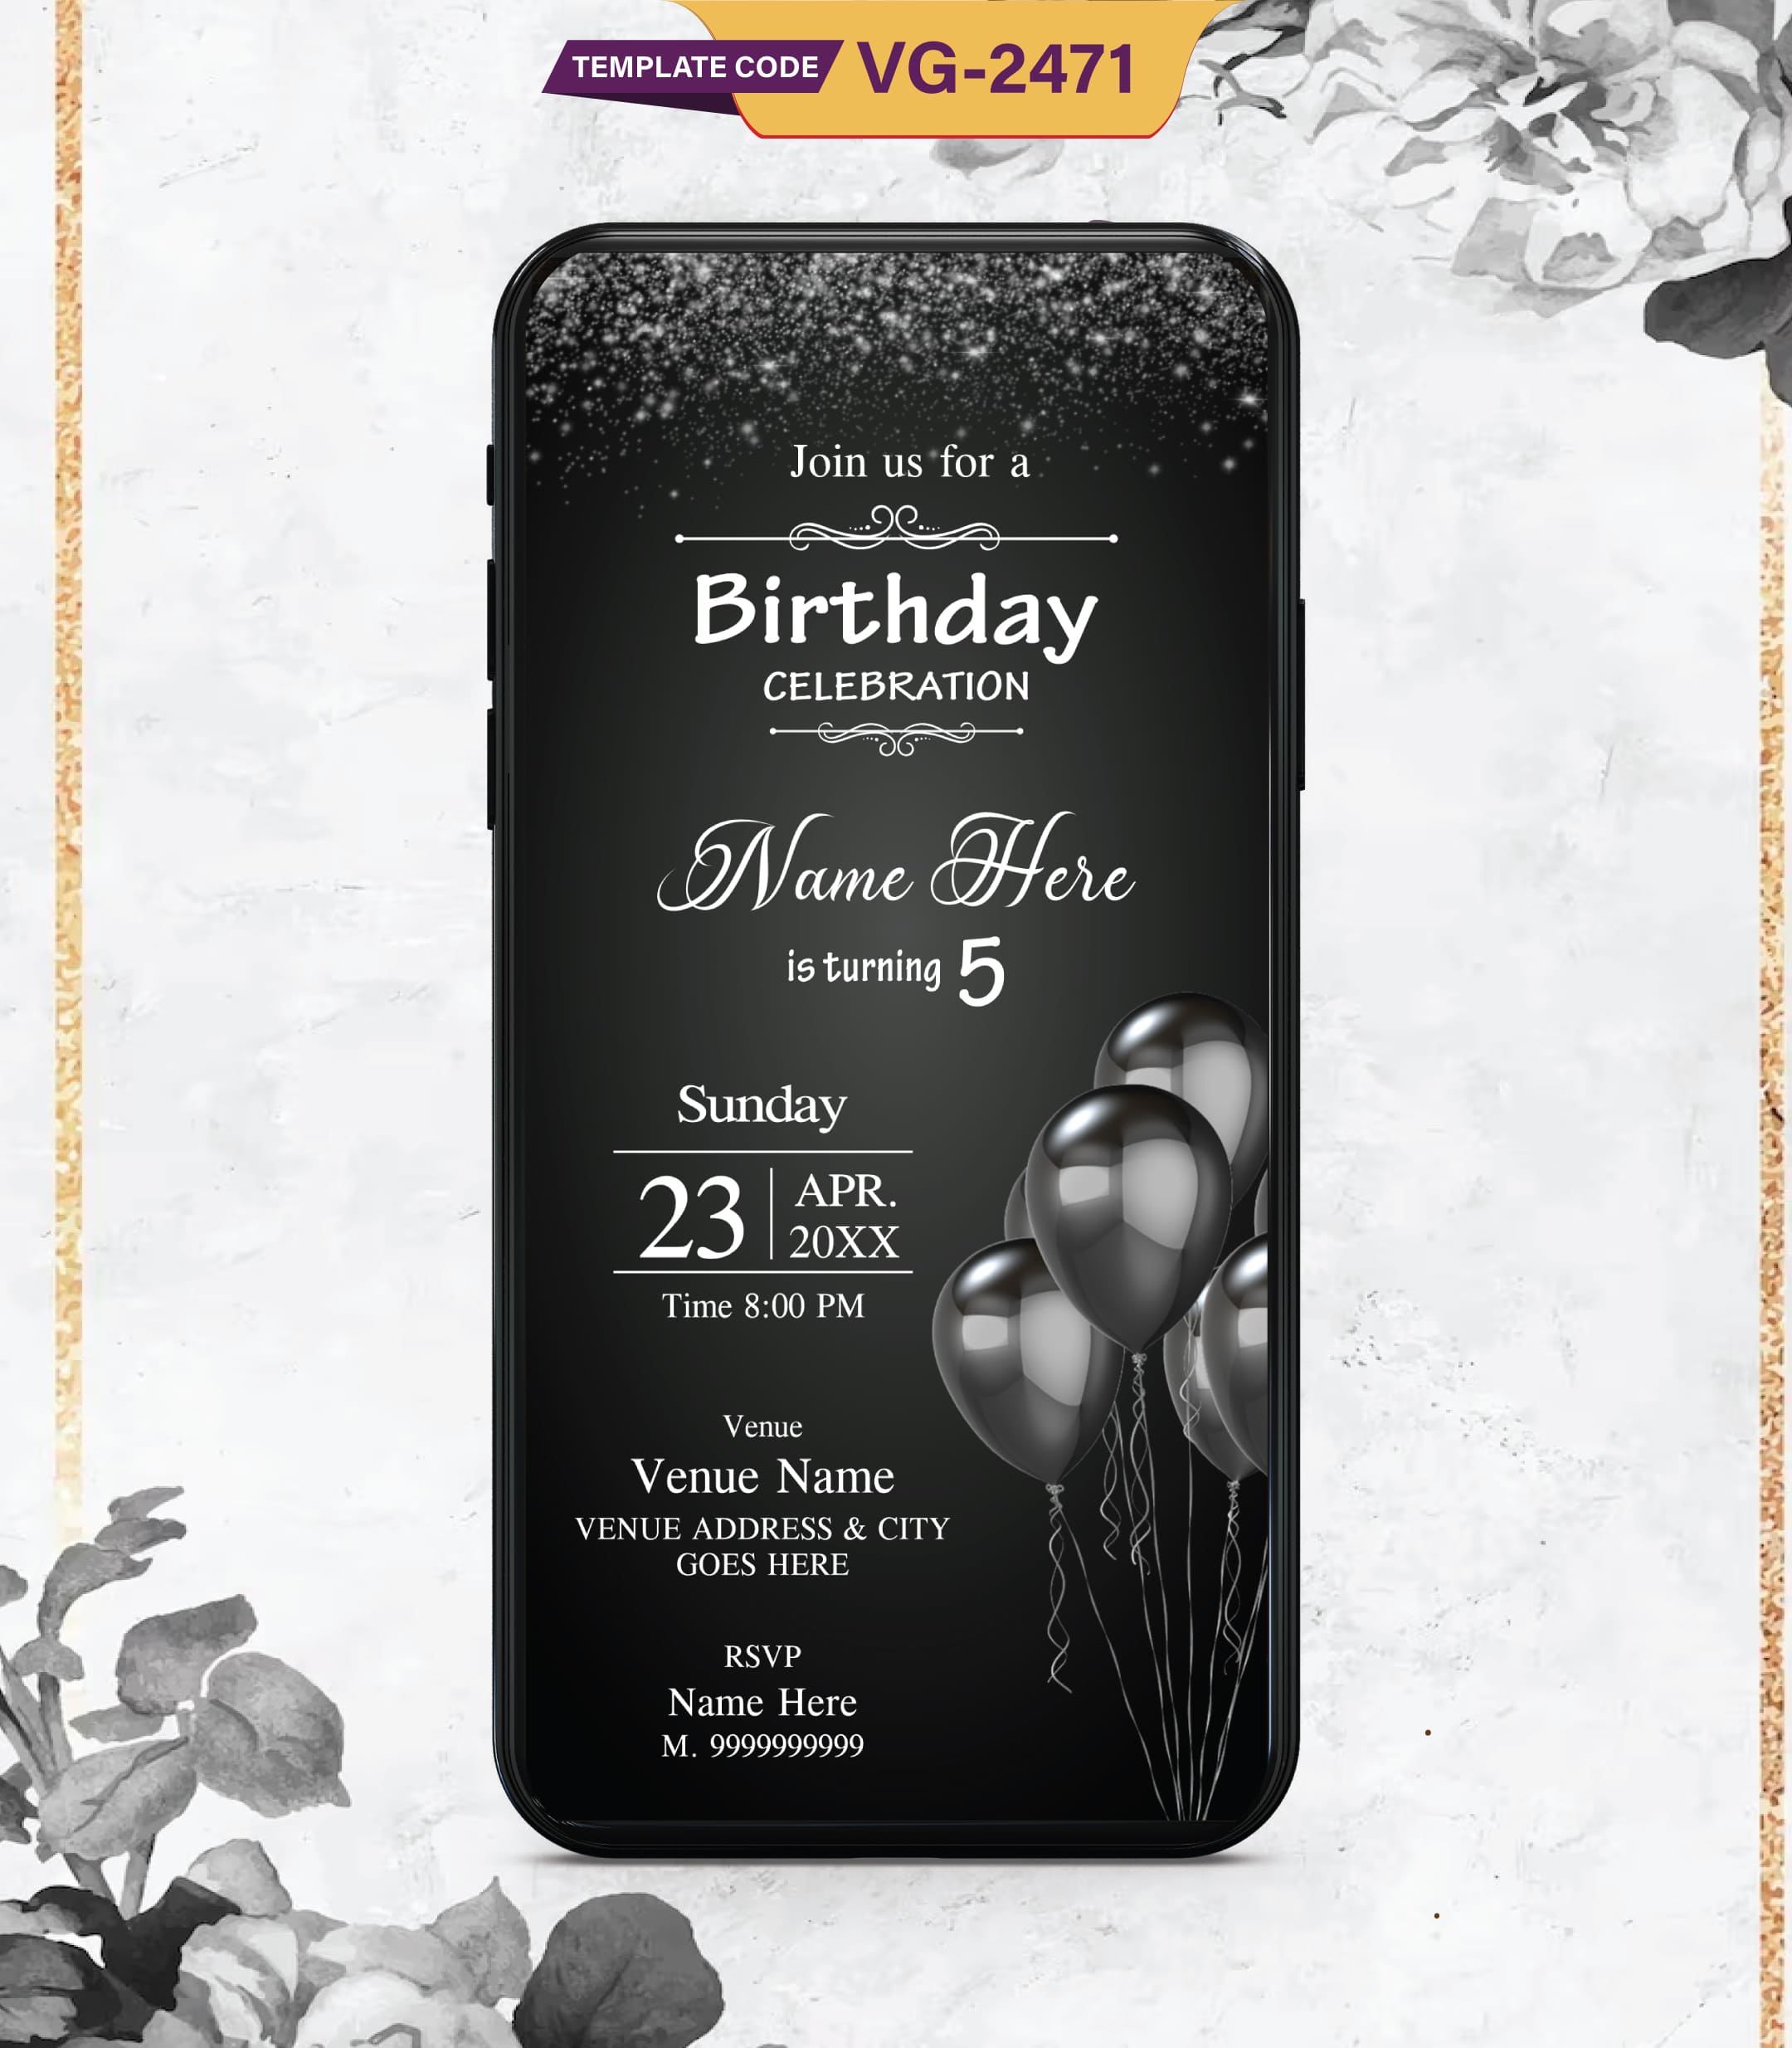 Black & White Birthday Party Invitations